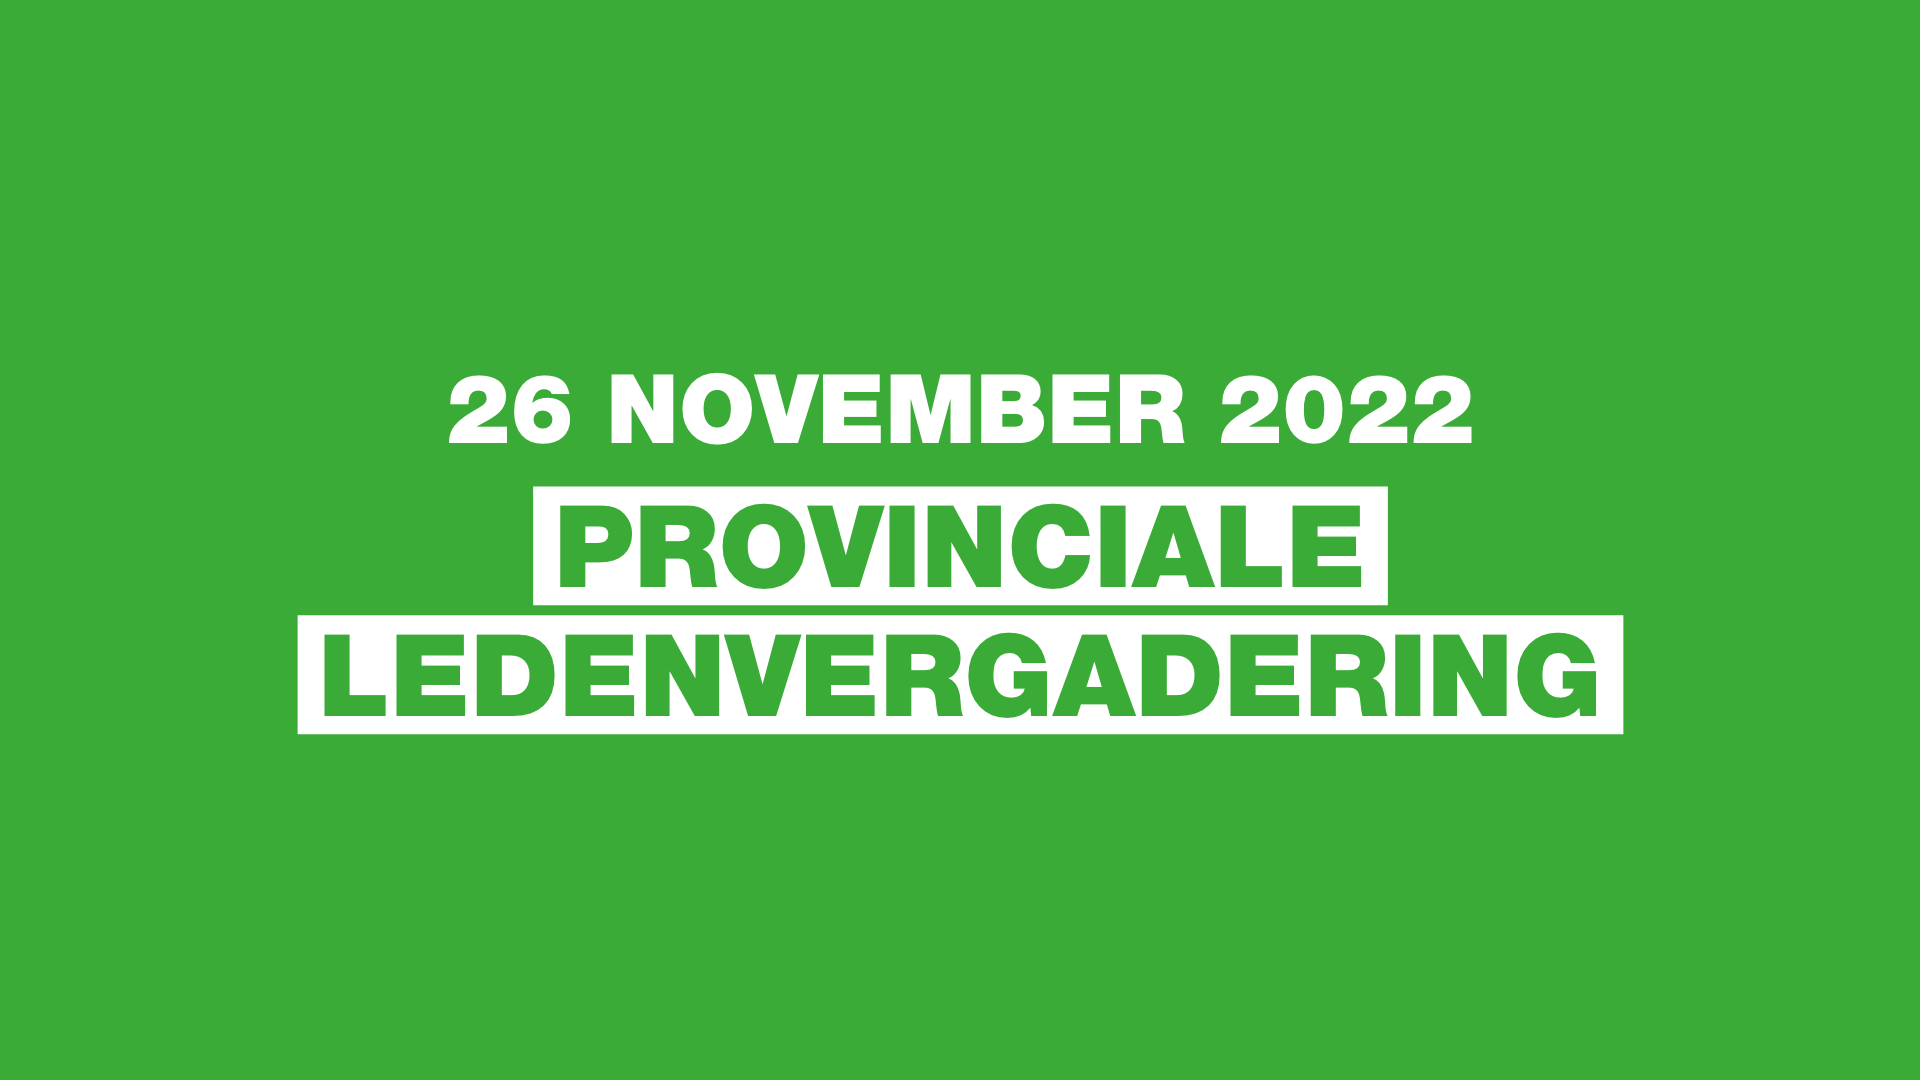 Provinciale Ledenvergadering 26 november